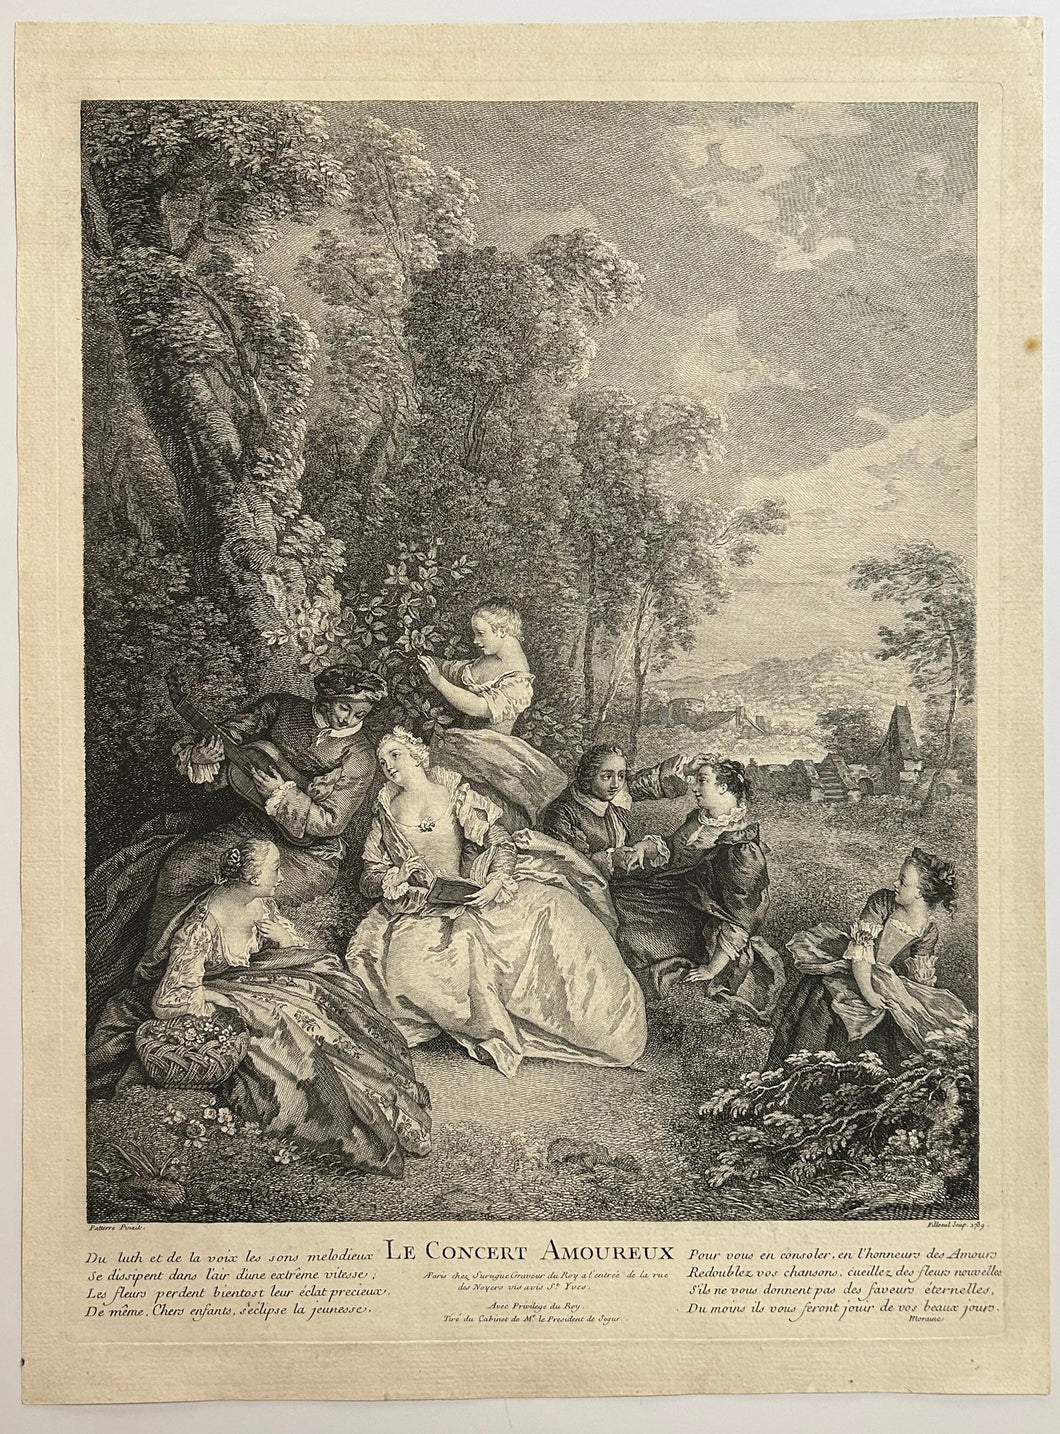 Le Concert Amoureux.  1739.